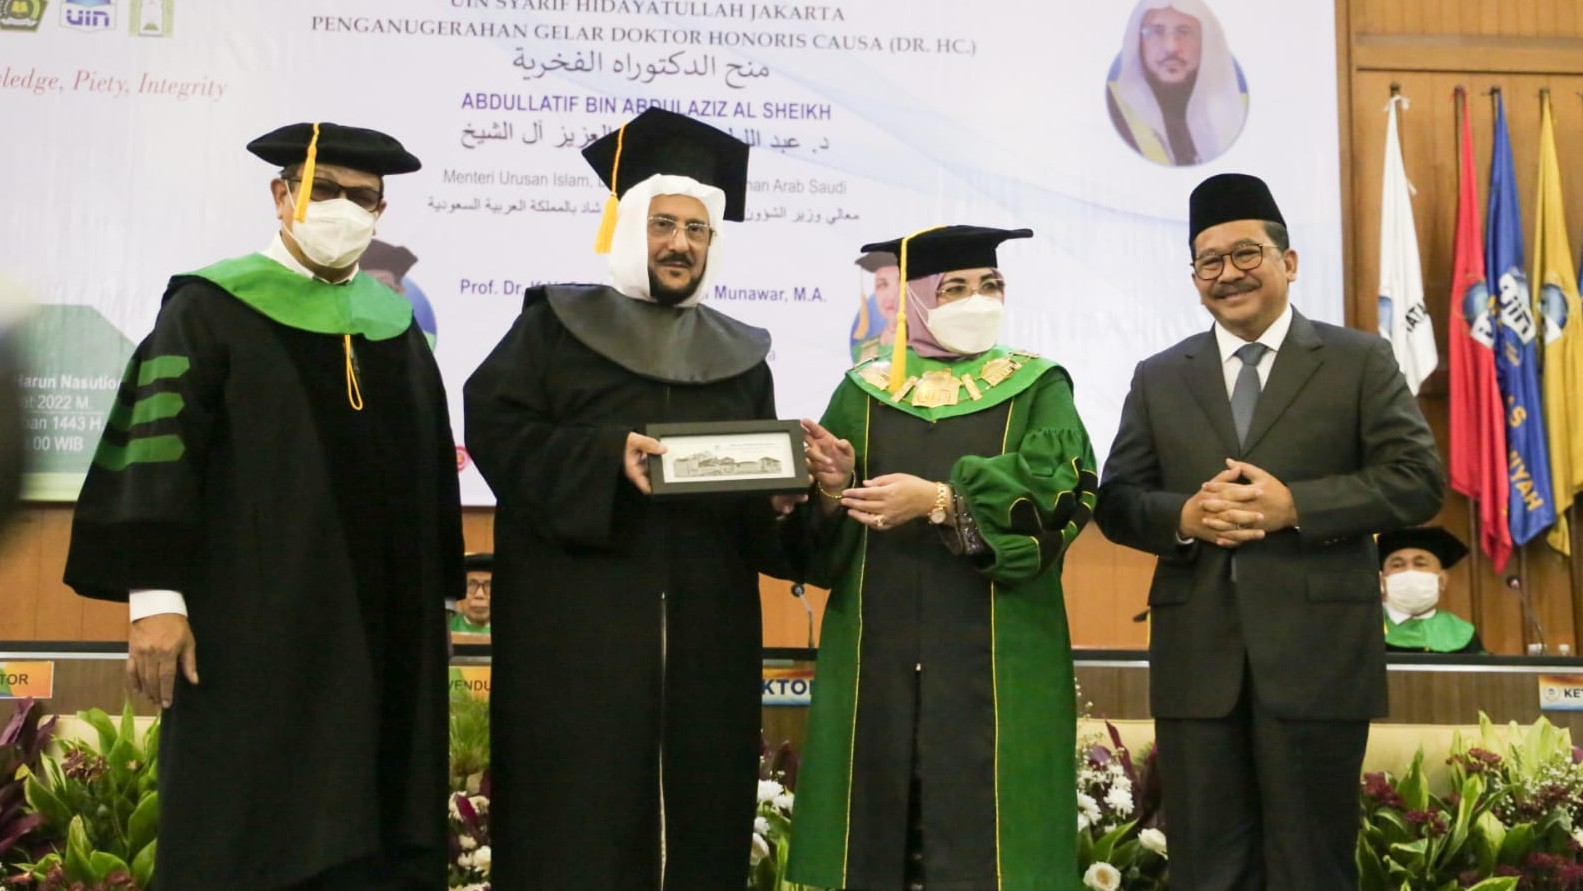 Penganugerahan Gelar Honoris Causa kepada Menteri Urusan Islam, Dakwah, dan Penyuluhan Arab Saudi, Syaikh Abdullatif oleh UIN Jakarta